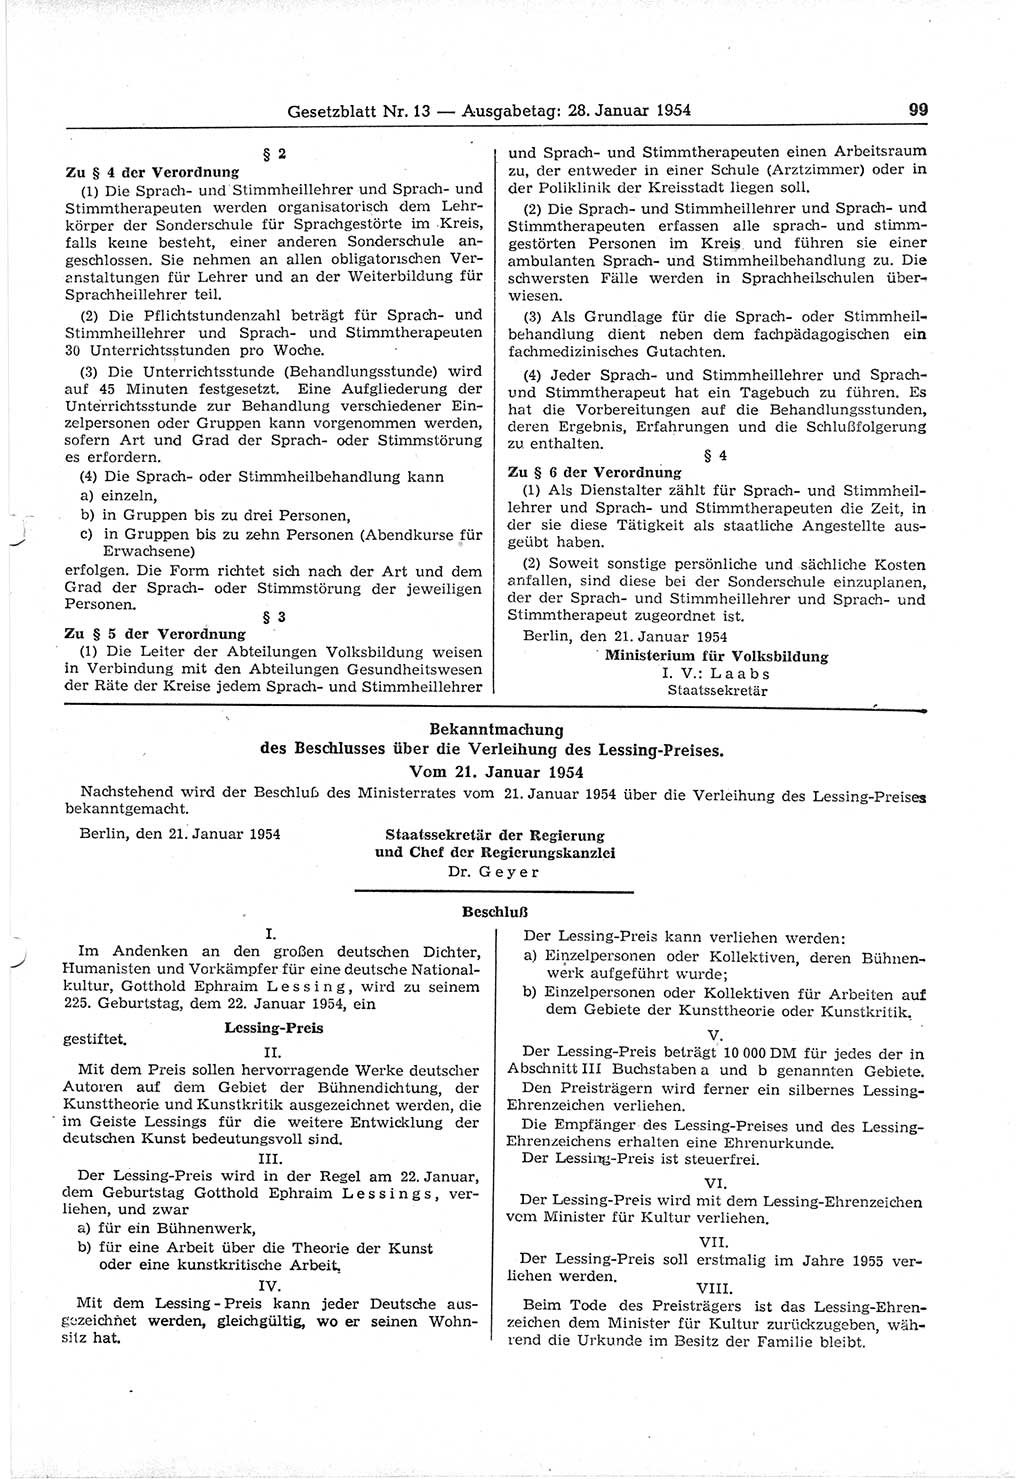 Gesetzblatt (GBl.) der Deutschen Demokratischen Republik (DDR) 1954, Seite 99 (GBl. DDR 1954, S. 99)